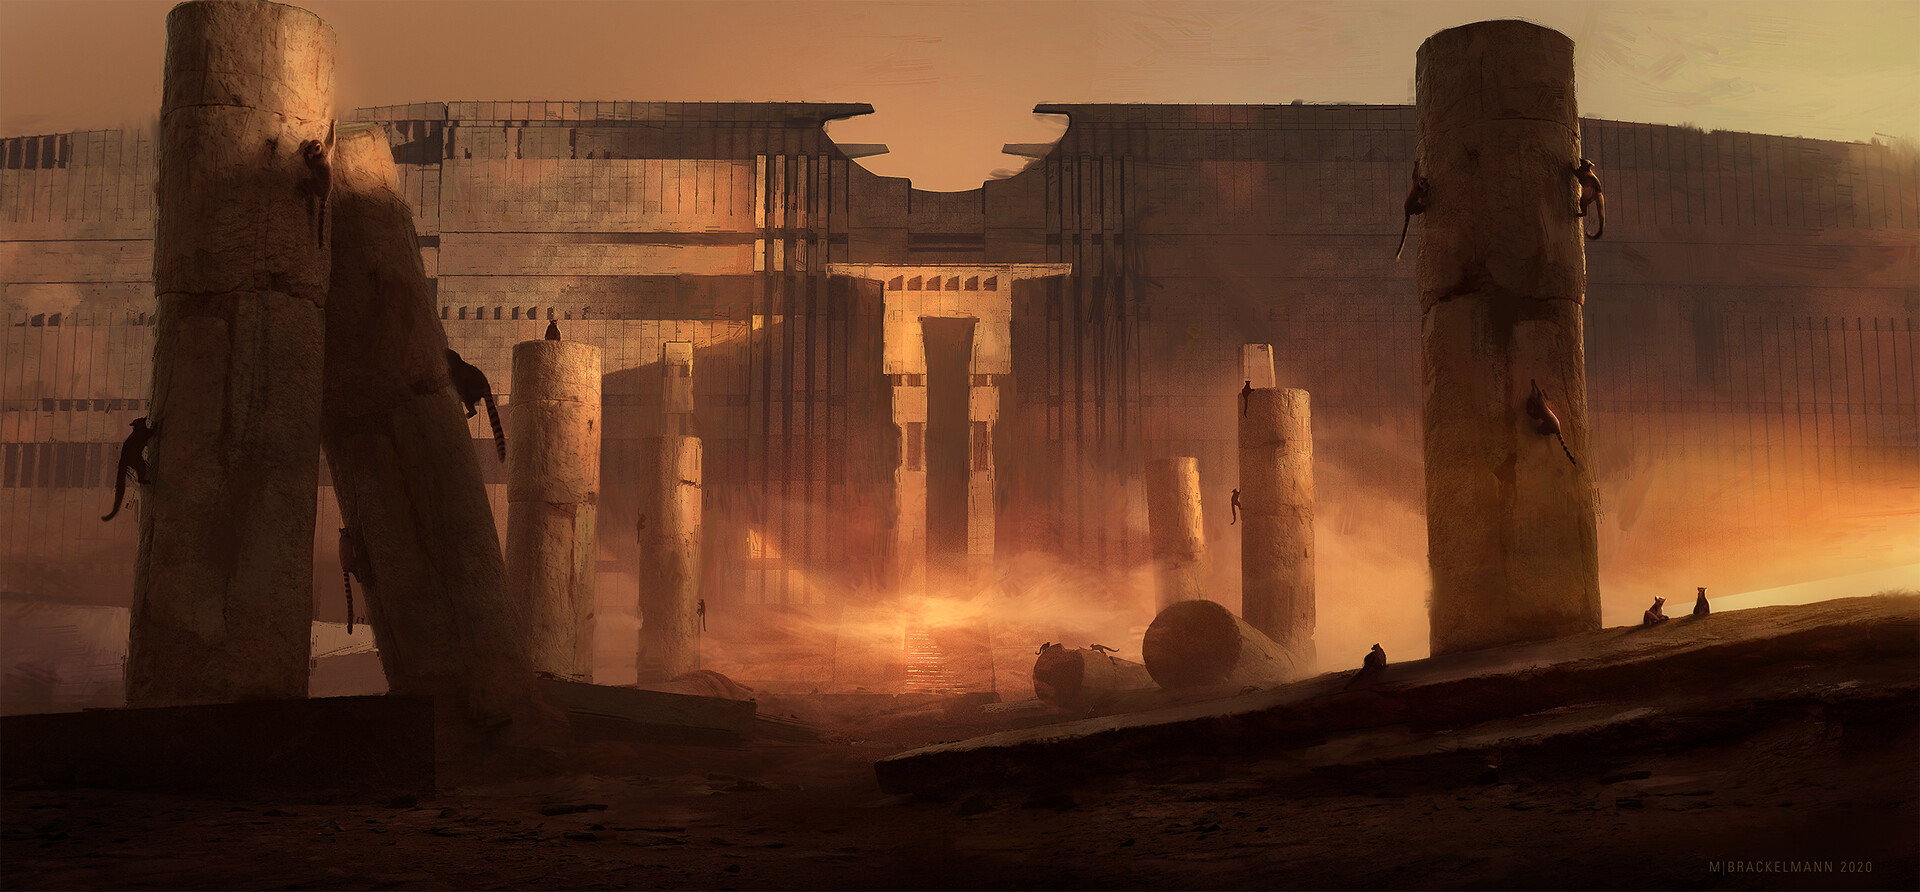 Yung desert temples. Sci-Fi храм в пустыне. Пустынный храм концепт. Талос пустынный храм. Пустынный храм Египет пещера.